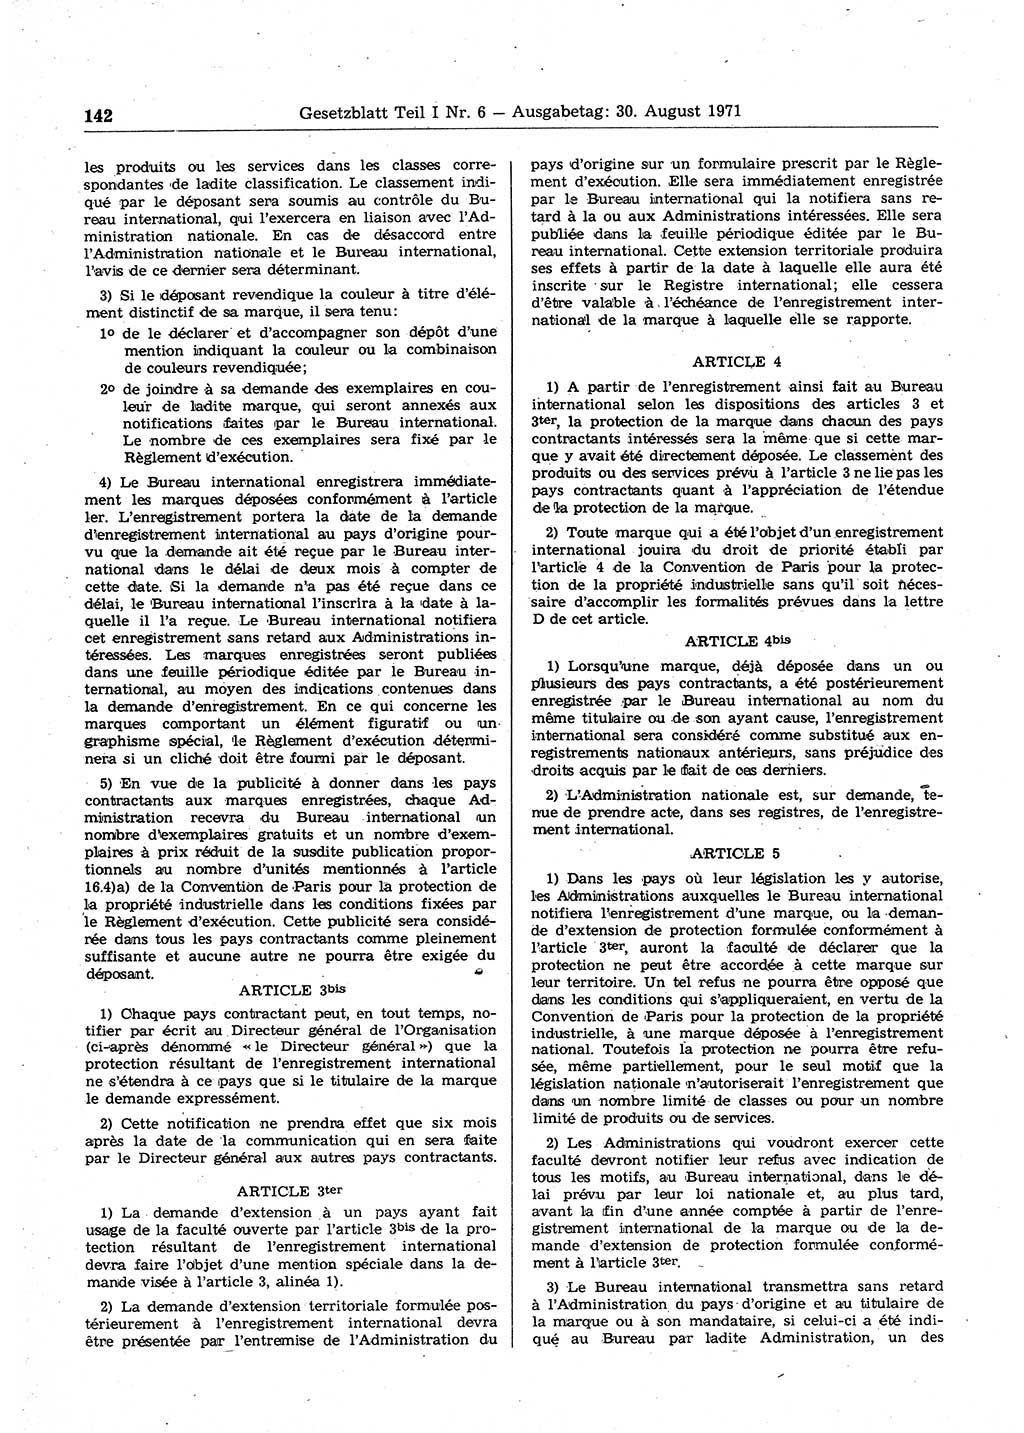 Gesetzblatt (GBl.) der Deutschen Demokratischen Republik (DDR) Teil Ⅰ 1971, Seite 142 (GBl. DDR Ⅰ 1971, S. 142)